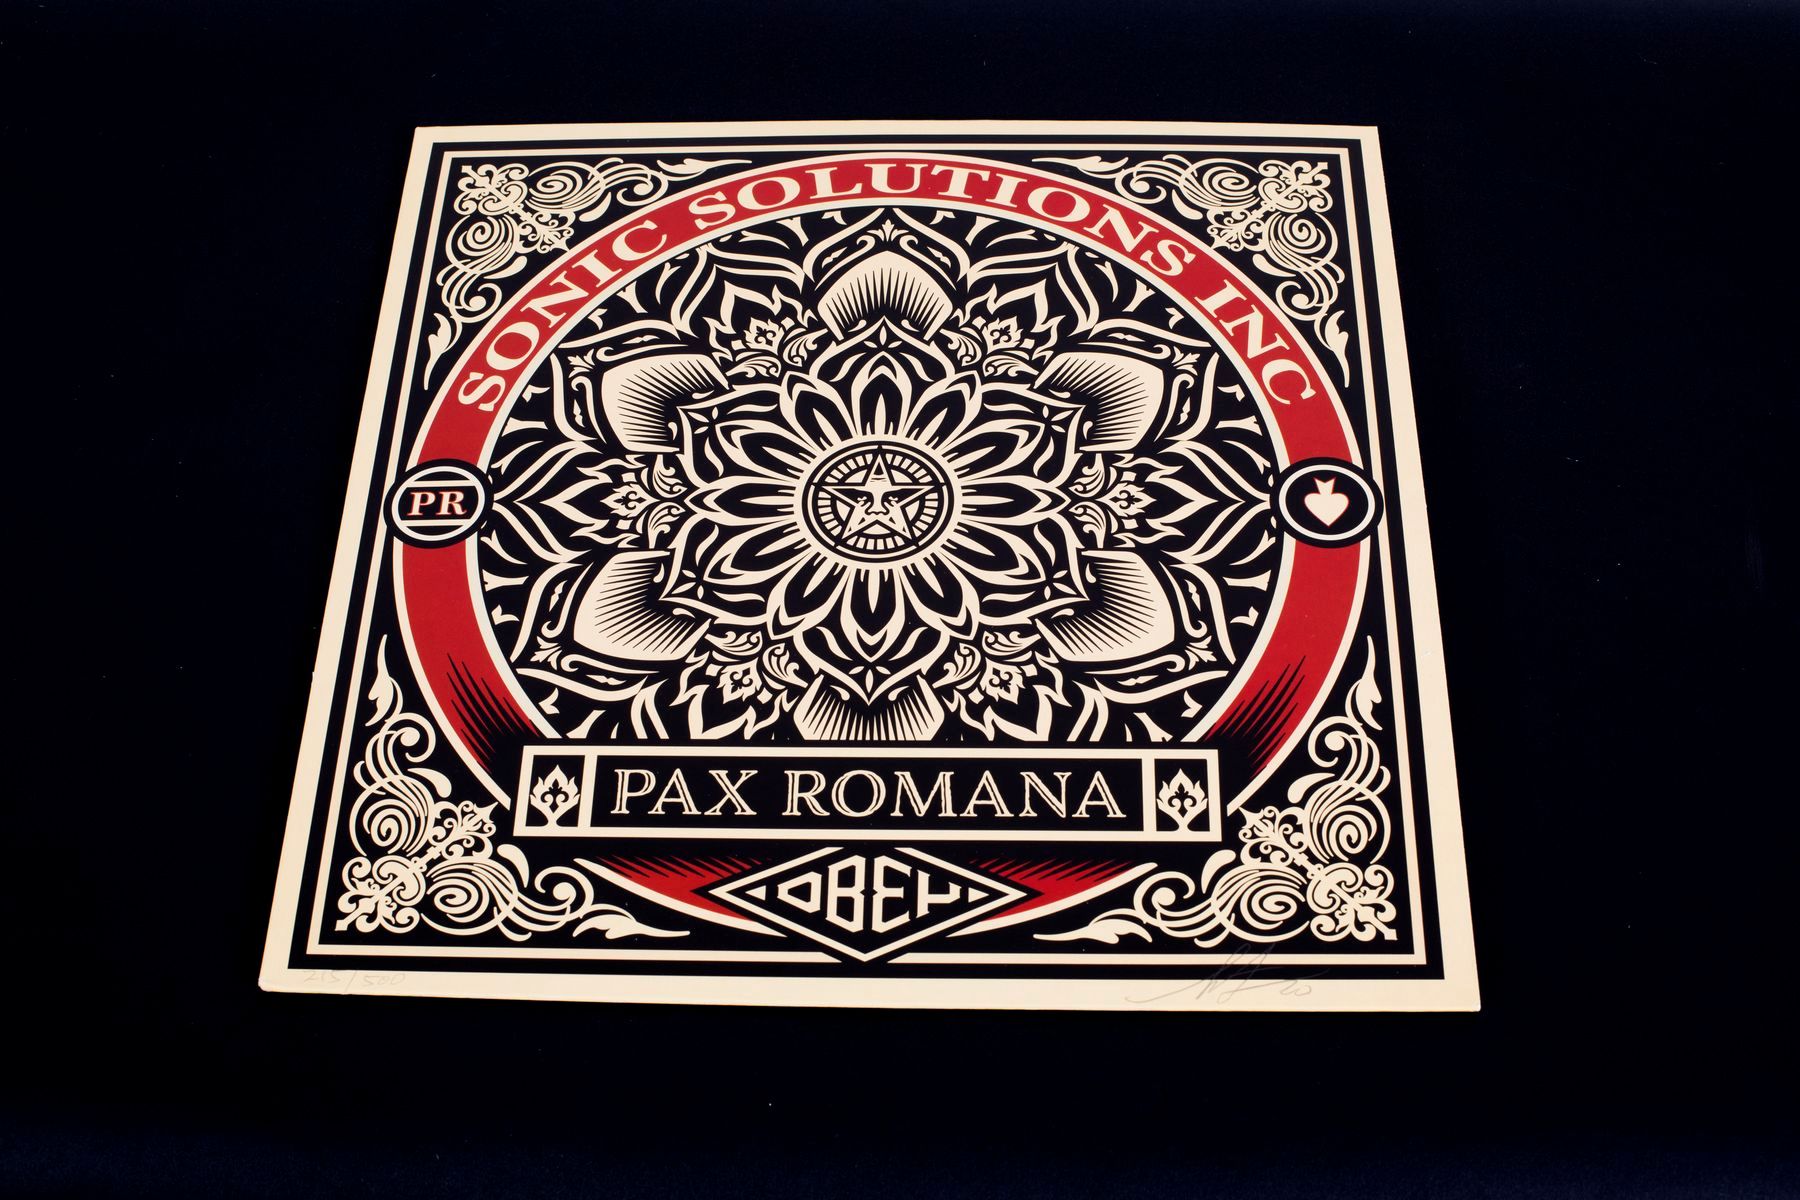 Null OBEY 

Pax Romana, 2020

Vinyle signé et numéroté 215/250

33x33 cm